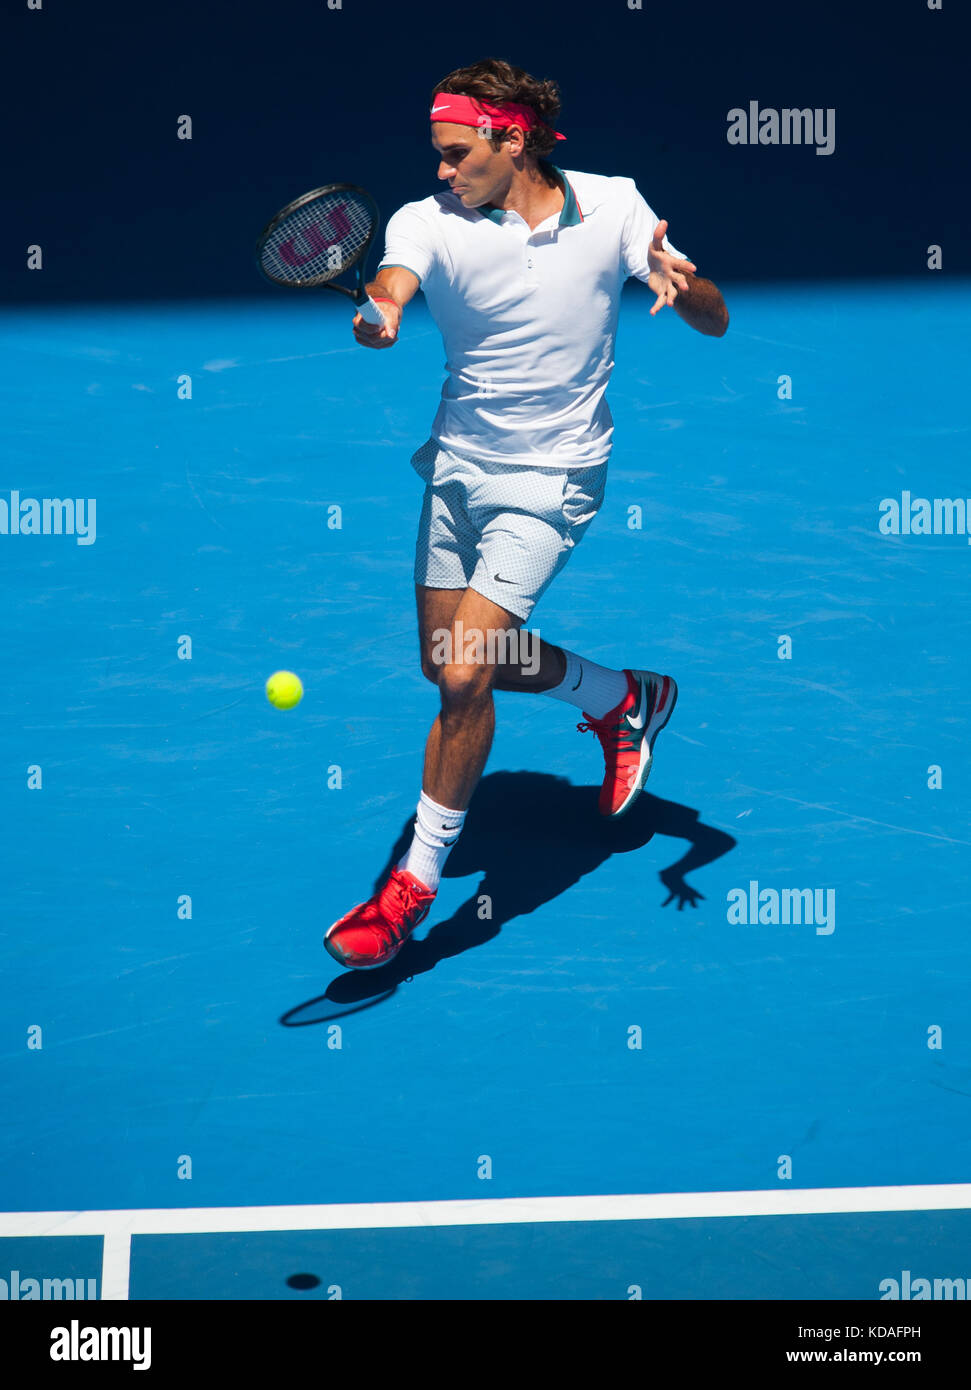 Roger Federer (sui) nel giorno 2 di Australian Open di giocare come temperature salito al 43c, 109.4f . Federer battere j. duckworth (AUS) 6-4, 6-4,6-2 in primo rou Foto Stock